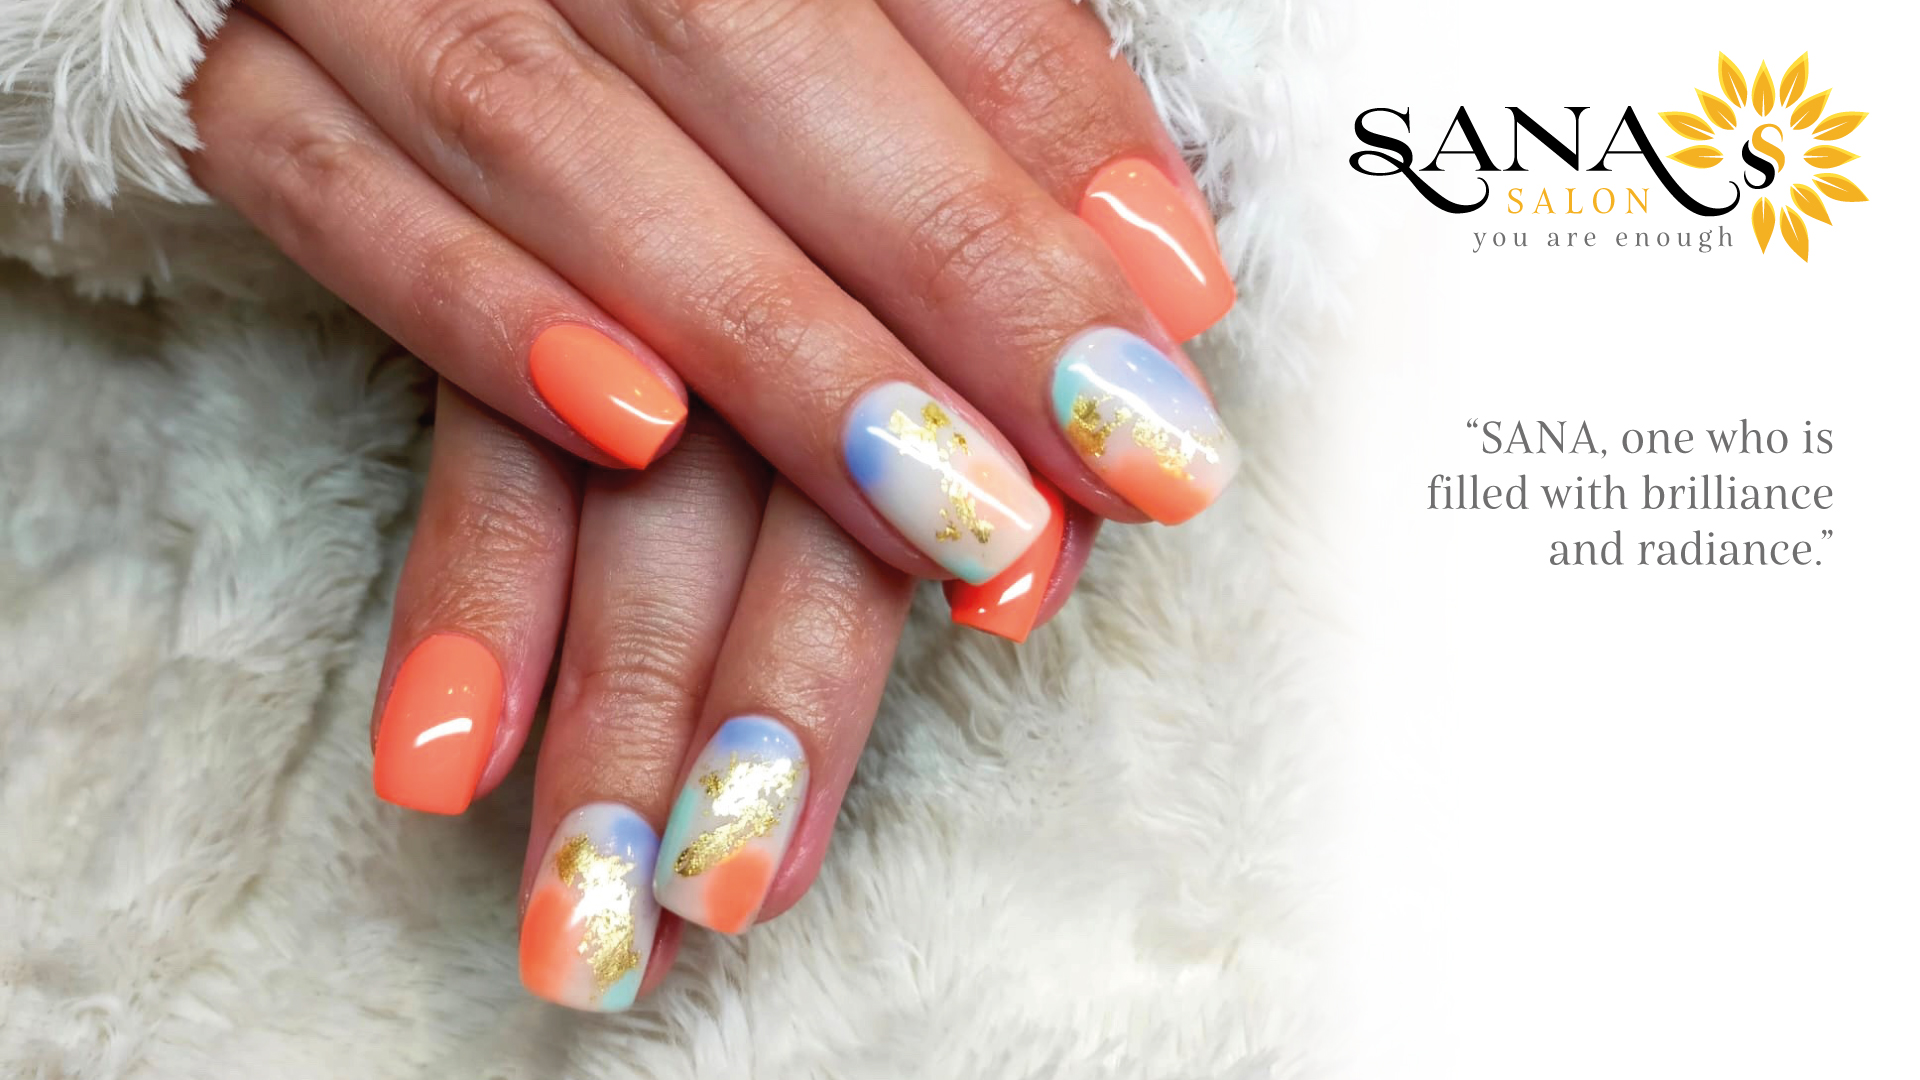 Sana Salon : hands and feet treatments, massage, beauty, lashes